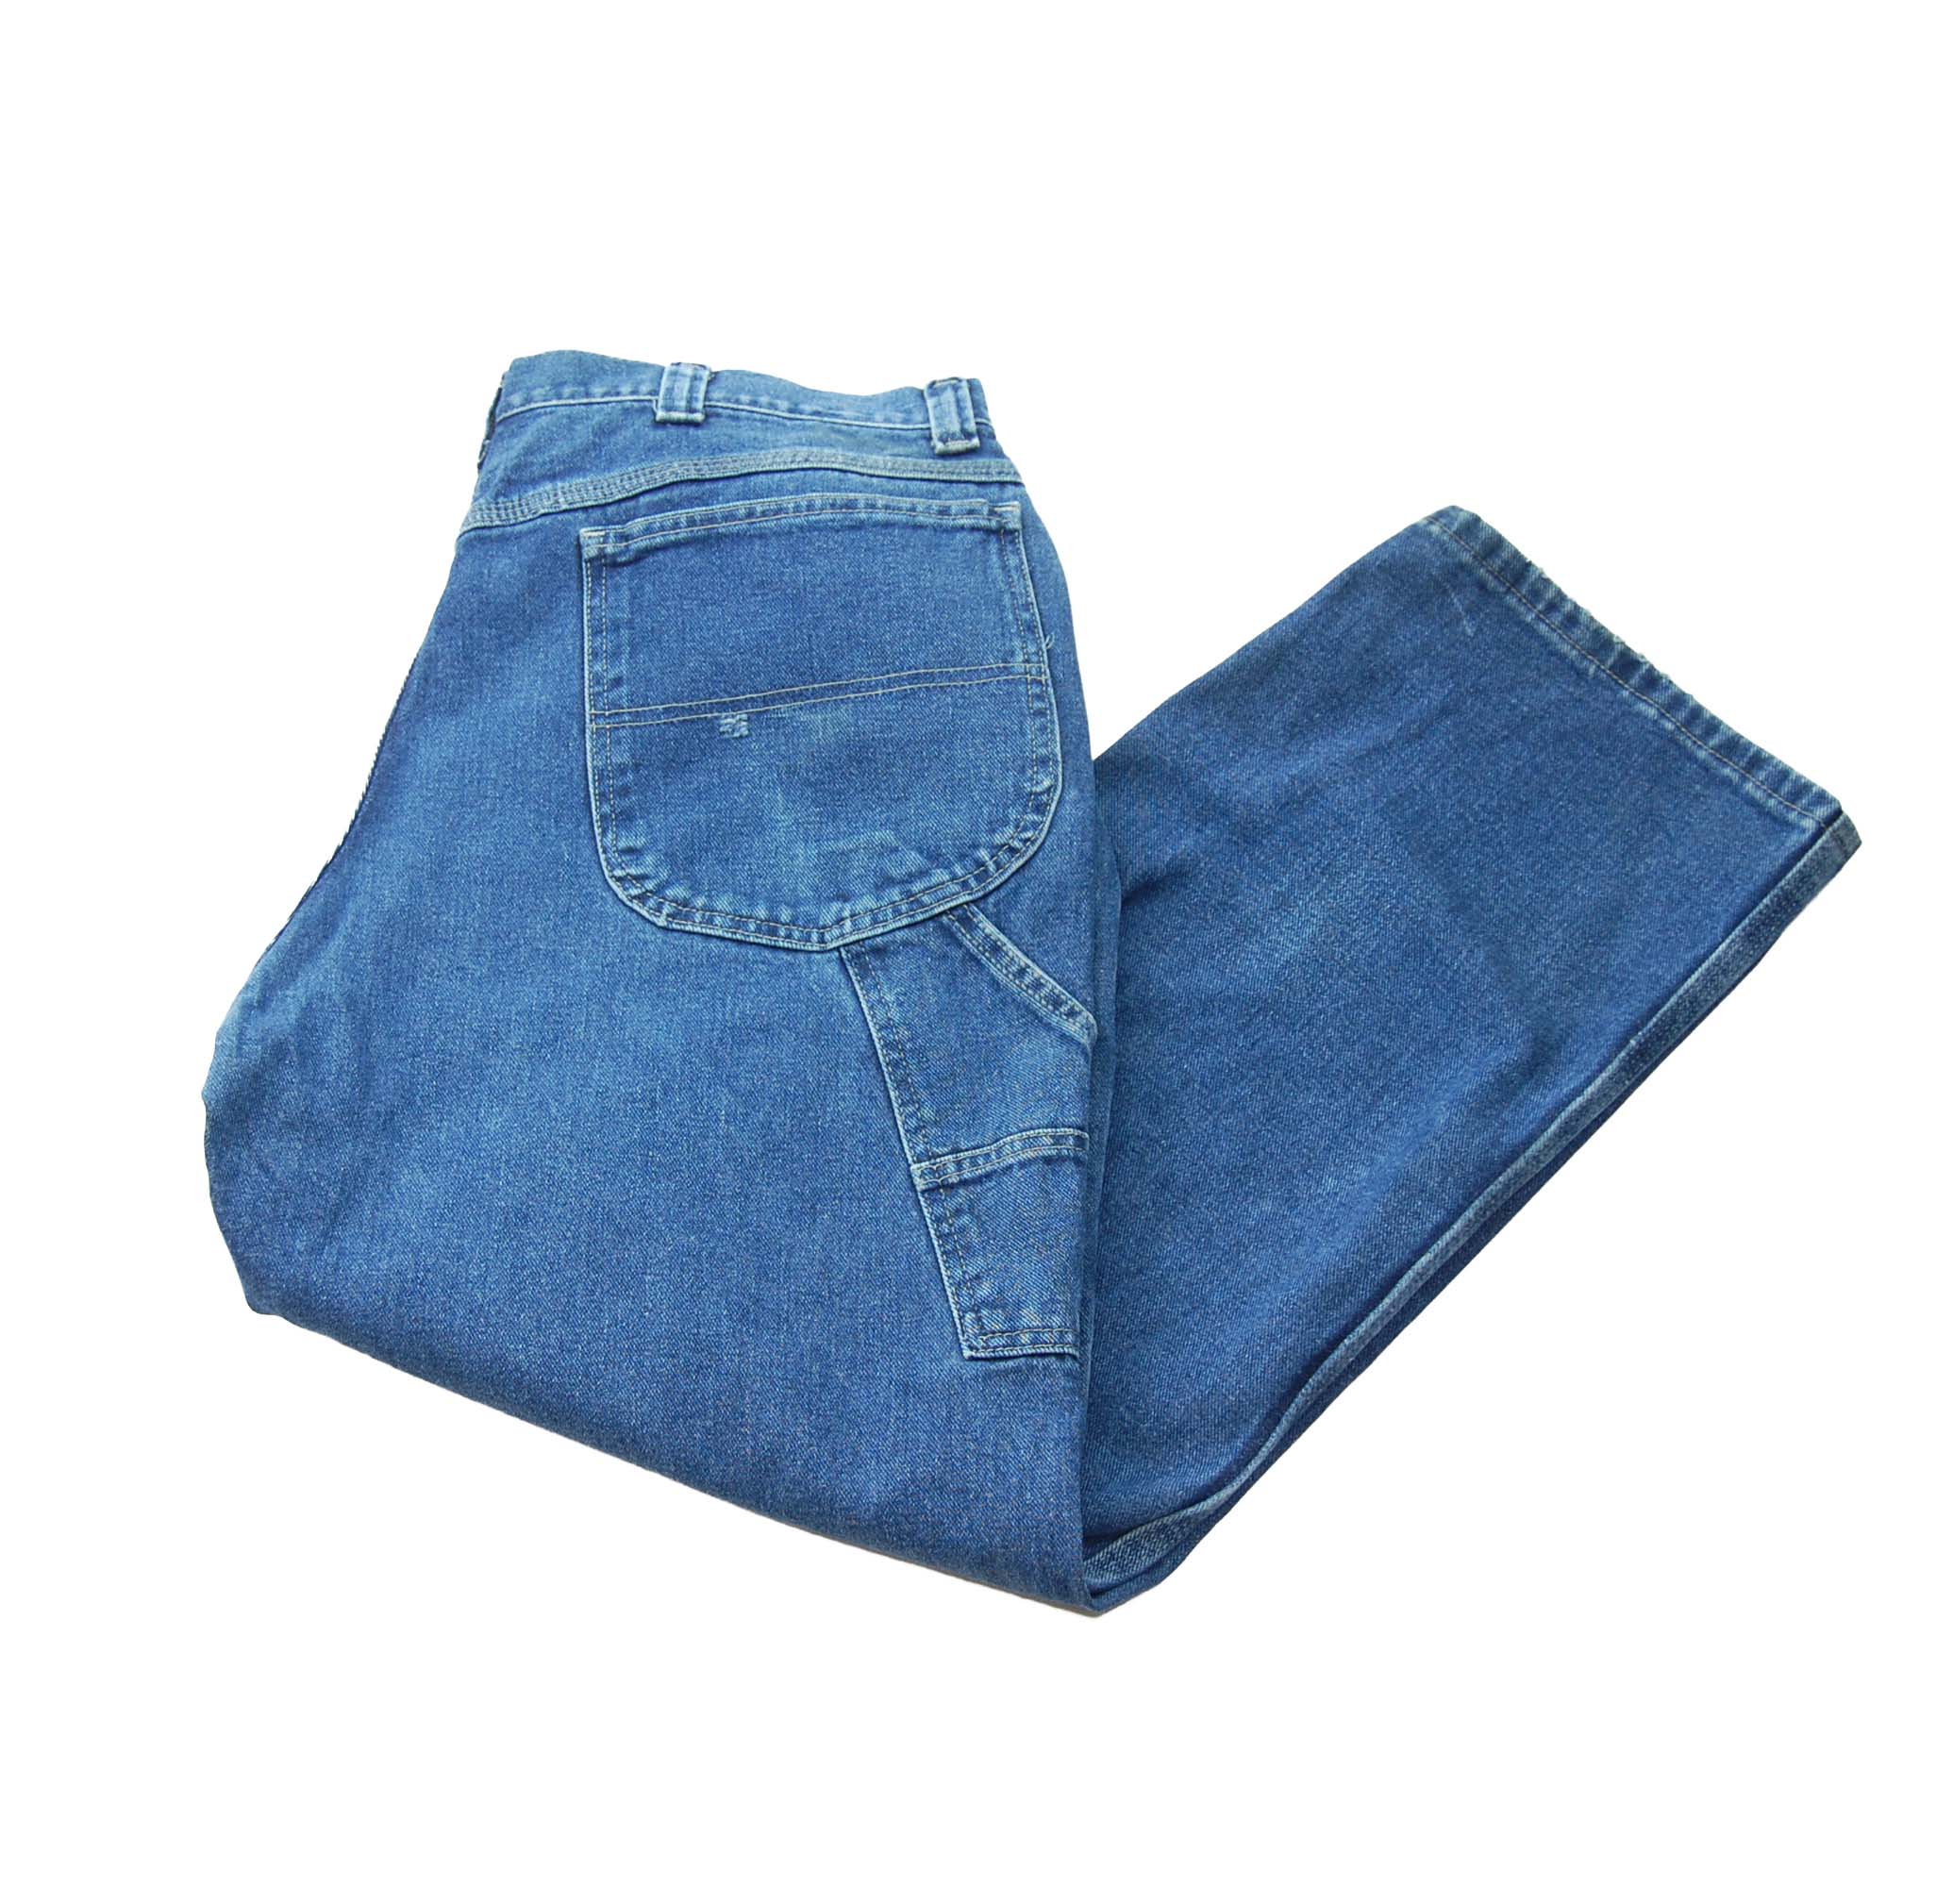 Mens Carpenter Jeans UK - XL - W40 X L30 - Blue 17 Vintage Clothing